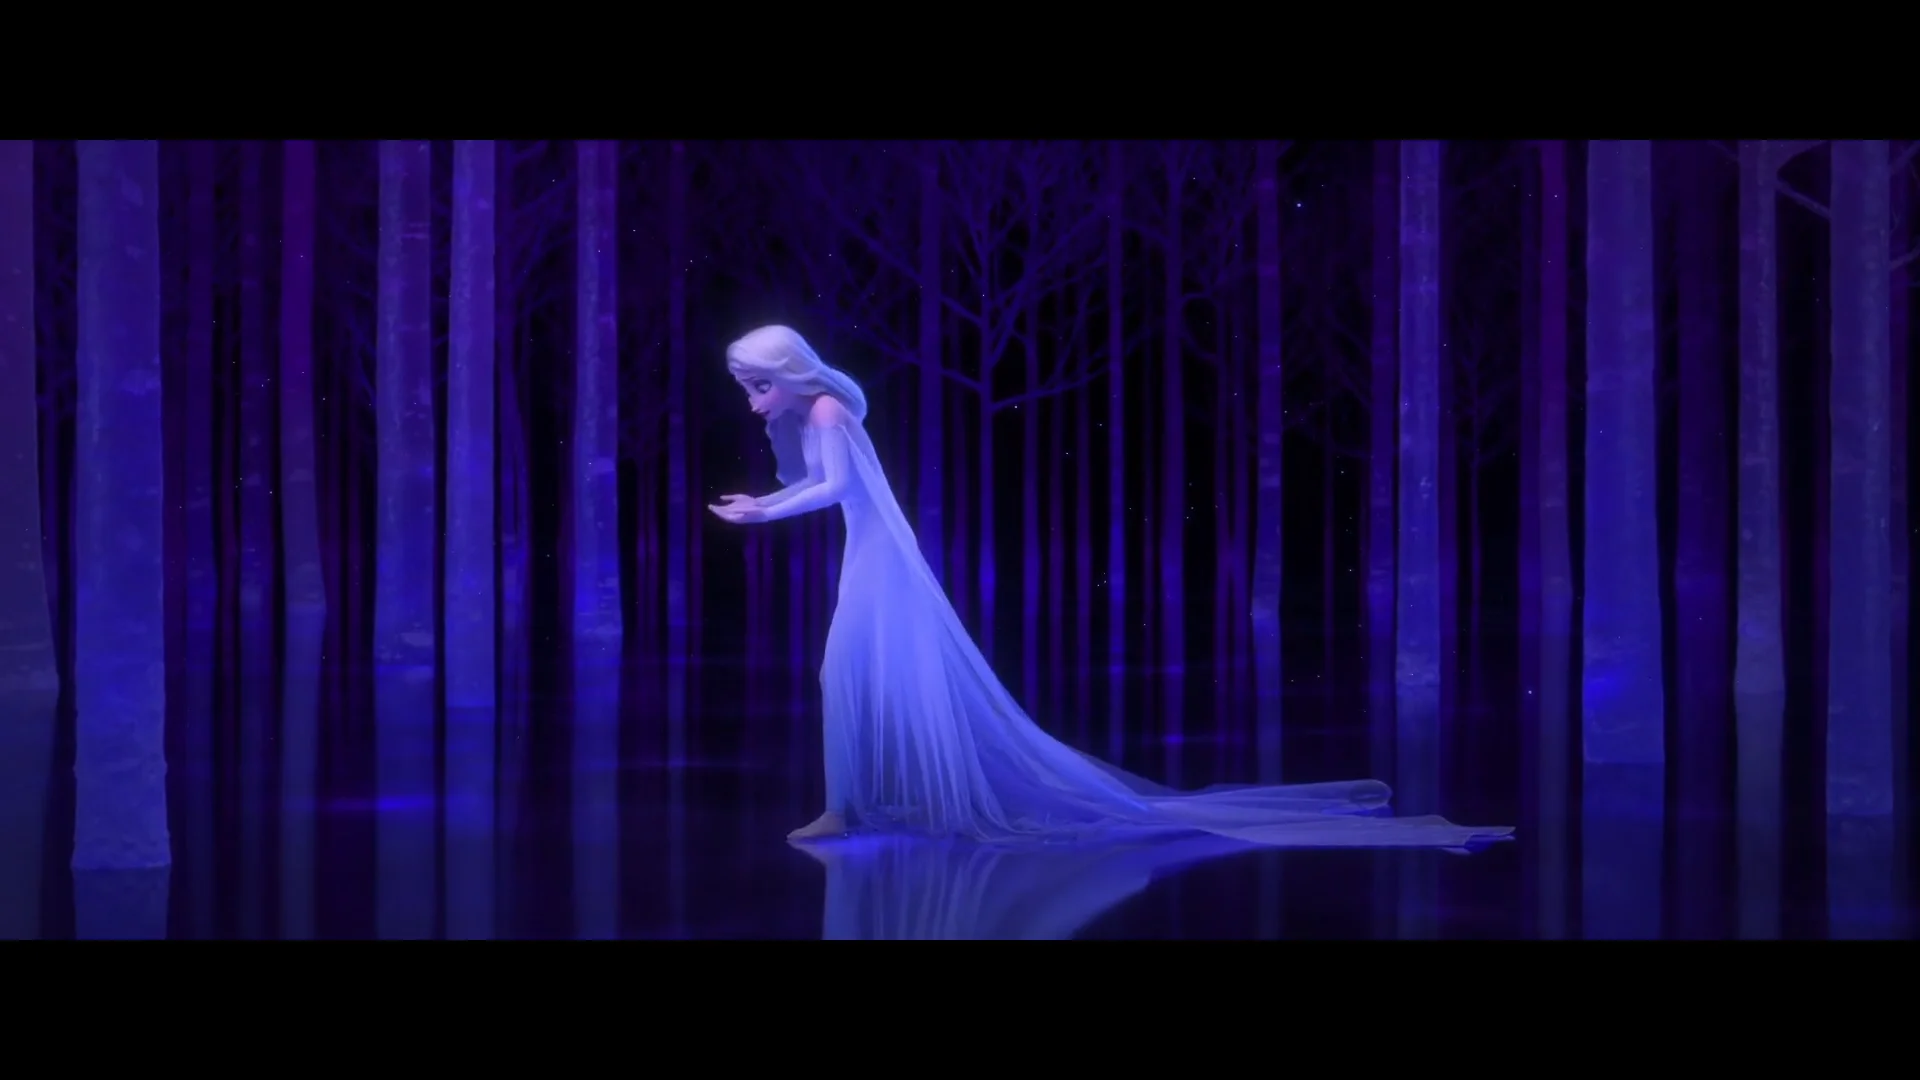 Frozen II, I Librottini, Disney: lo sfoglialibro on Vimeo